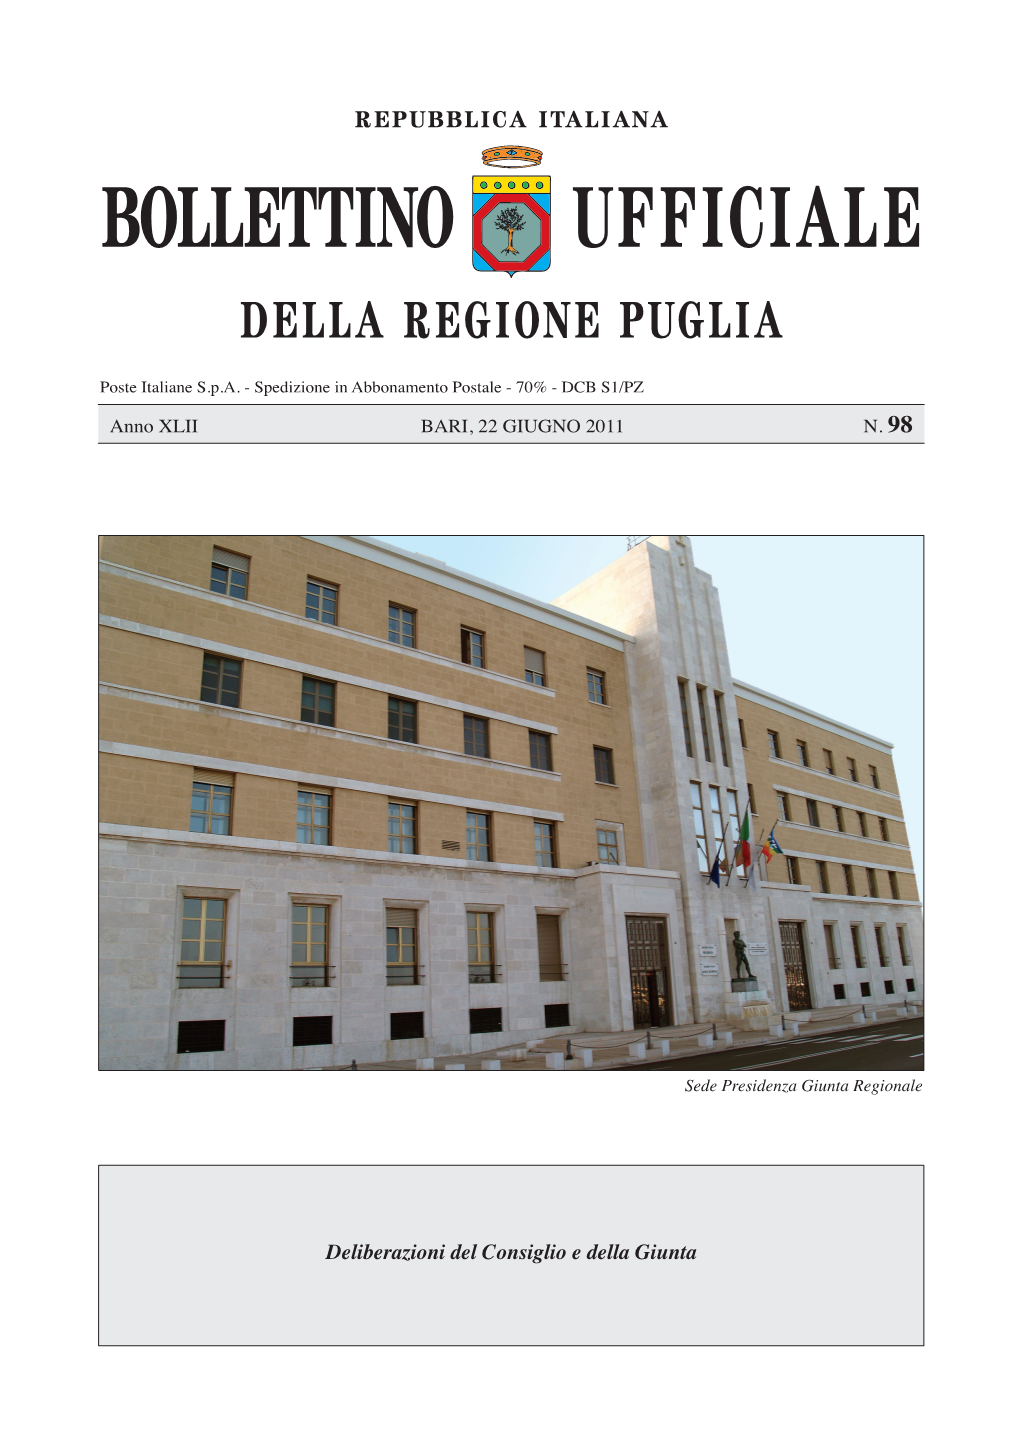 Ufficiale Bollettino